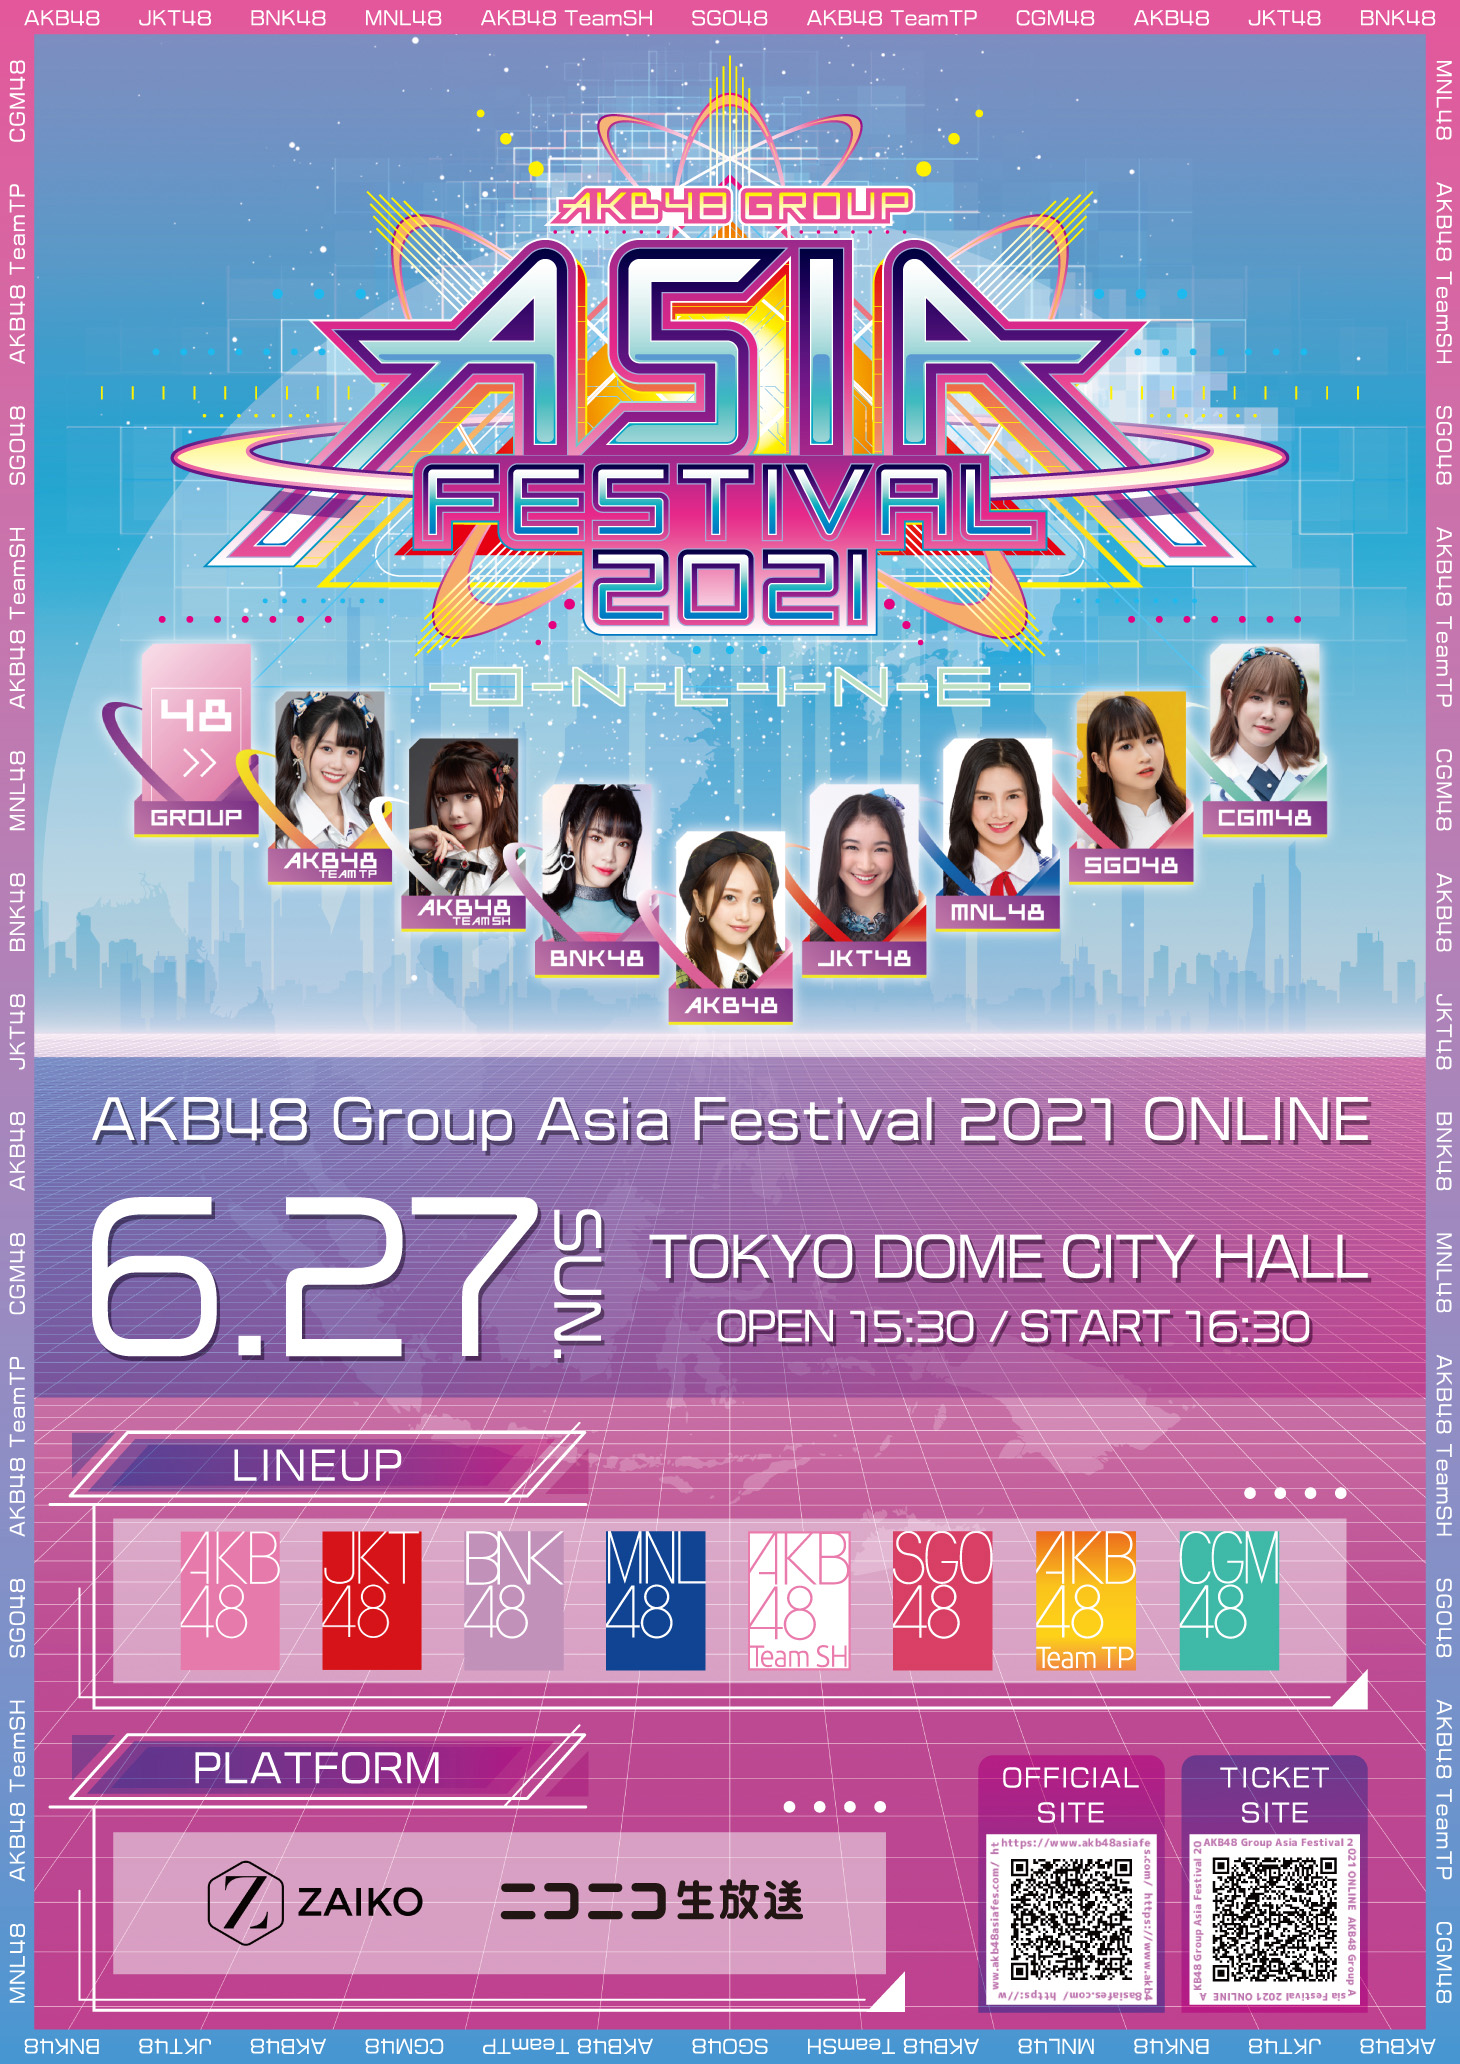 AKB48 Group Asia Festival 2021 Online